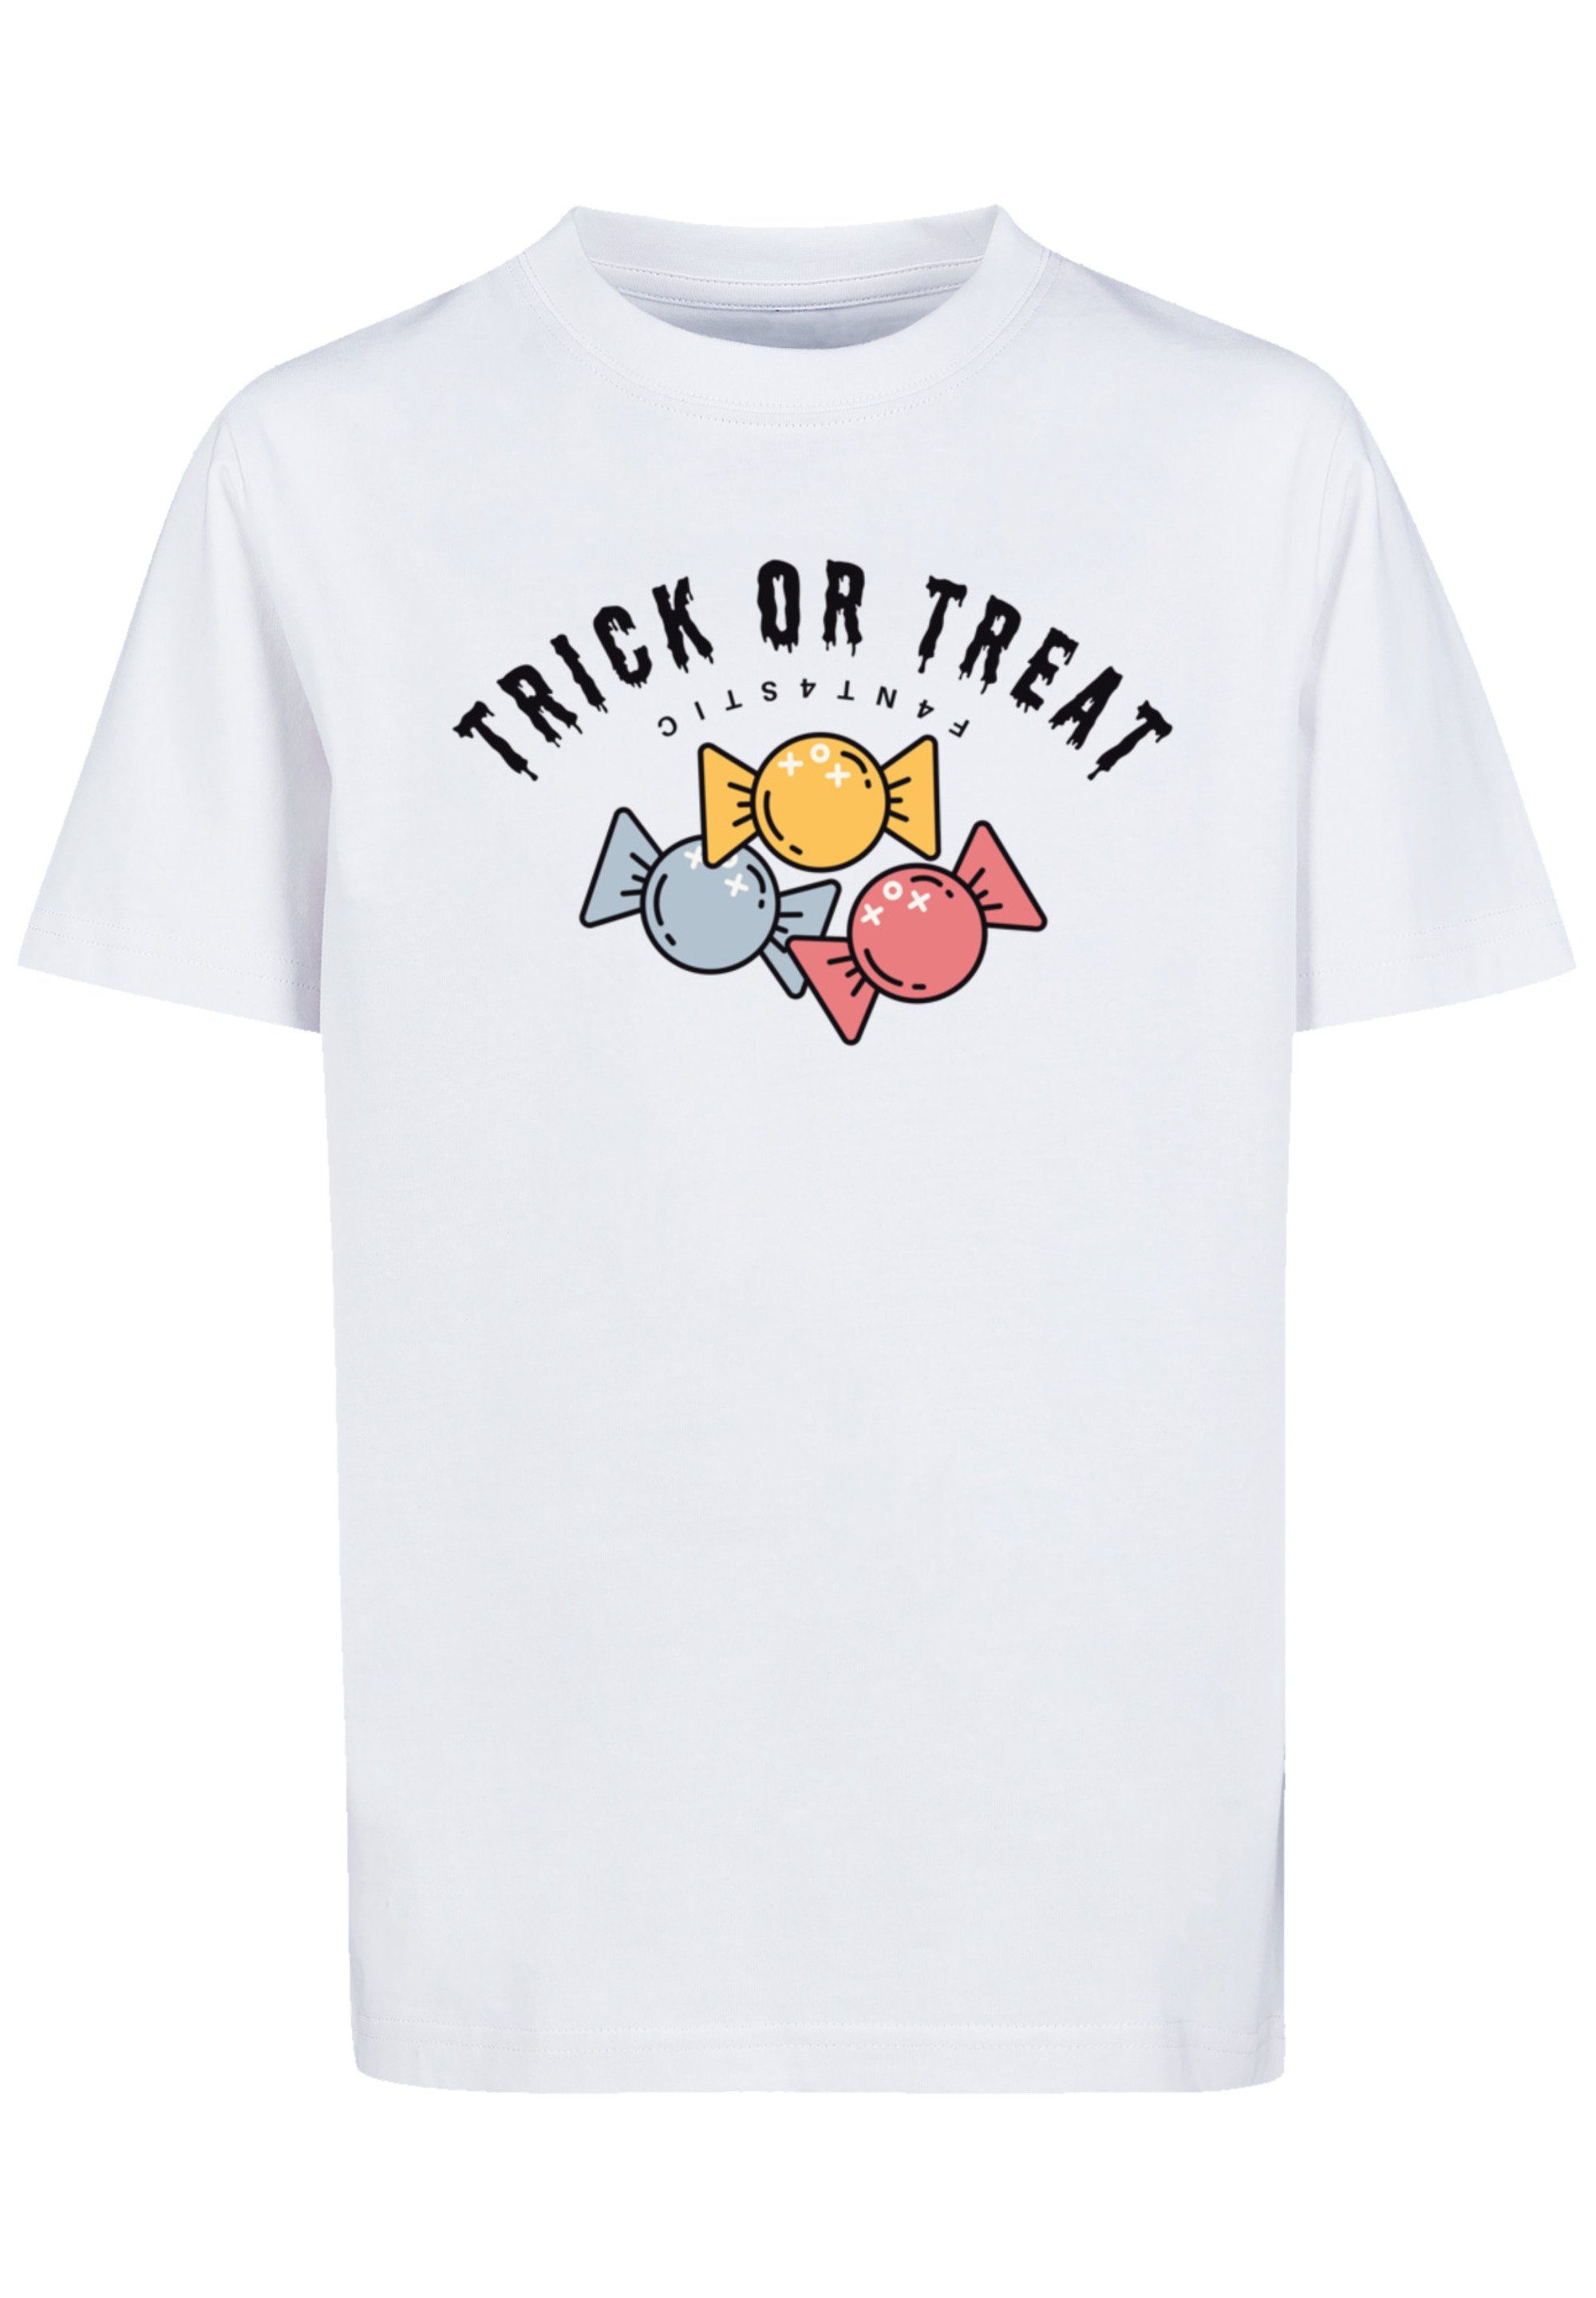 F4NT4STIC Print Halloween Or weiß T-Shirt Trick Treat